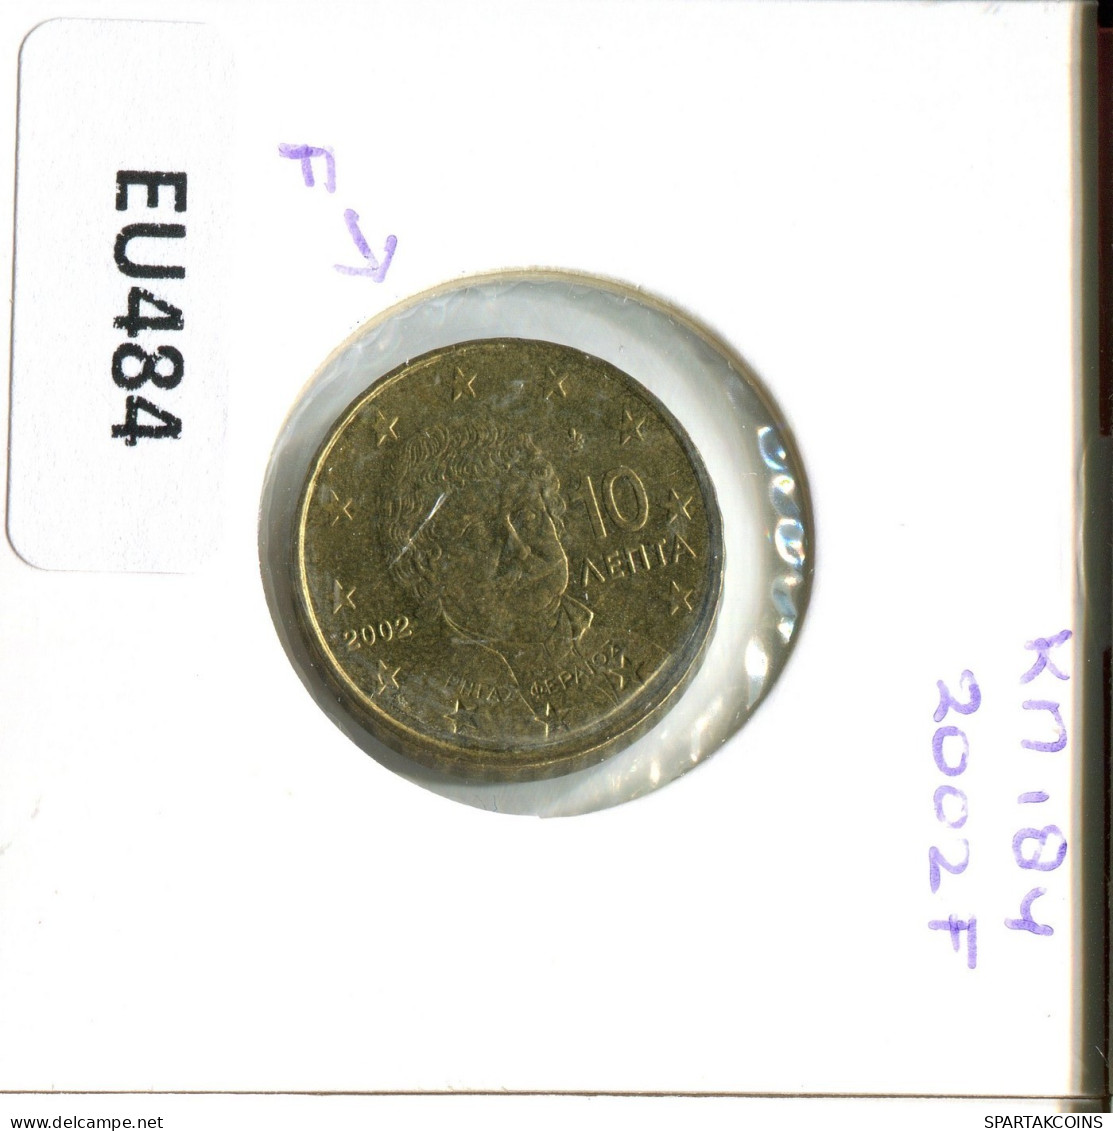 10 EURO CENTS 2002 GRIECHENLAND GREECE Münze #EU484.D.A - Griechenland